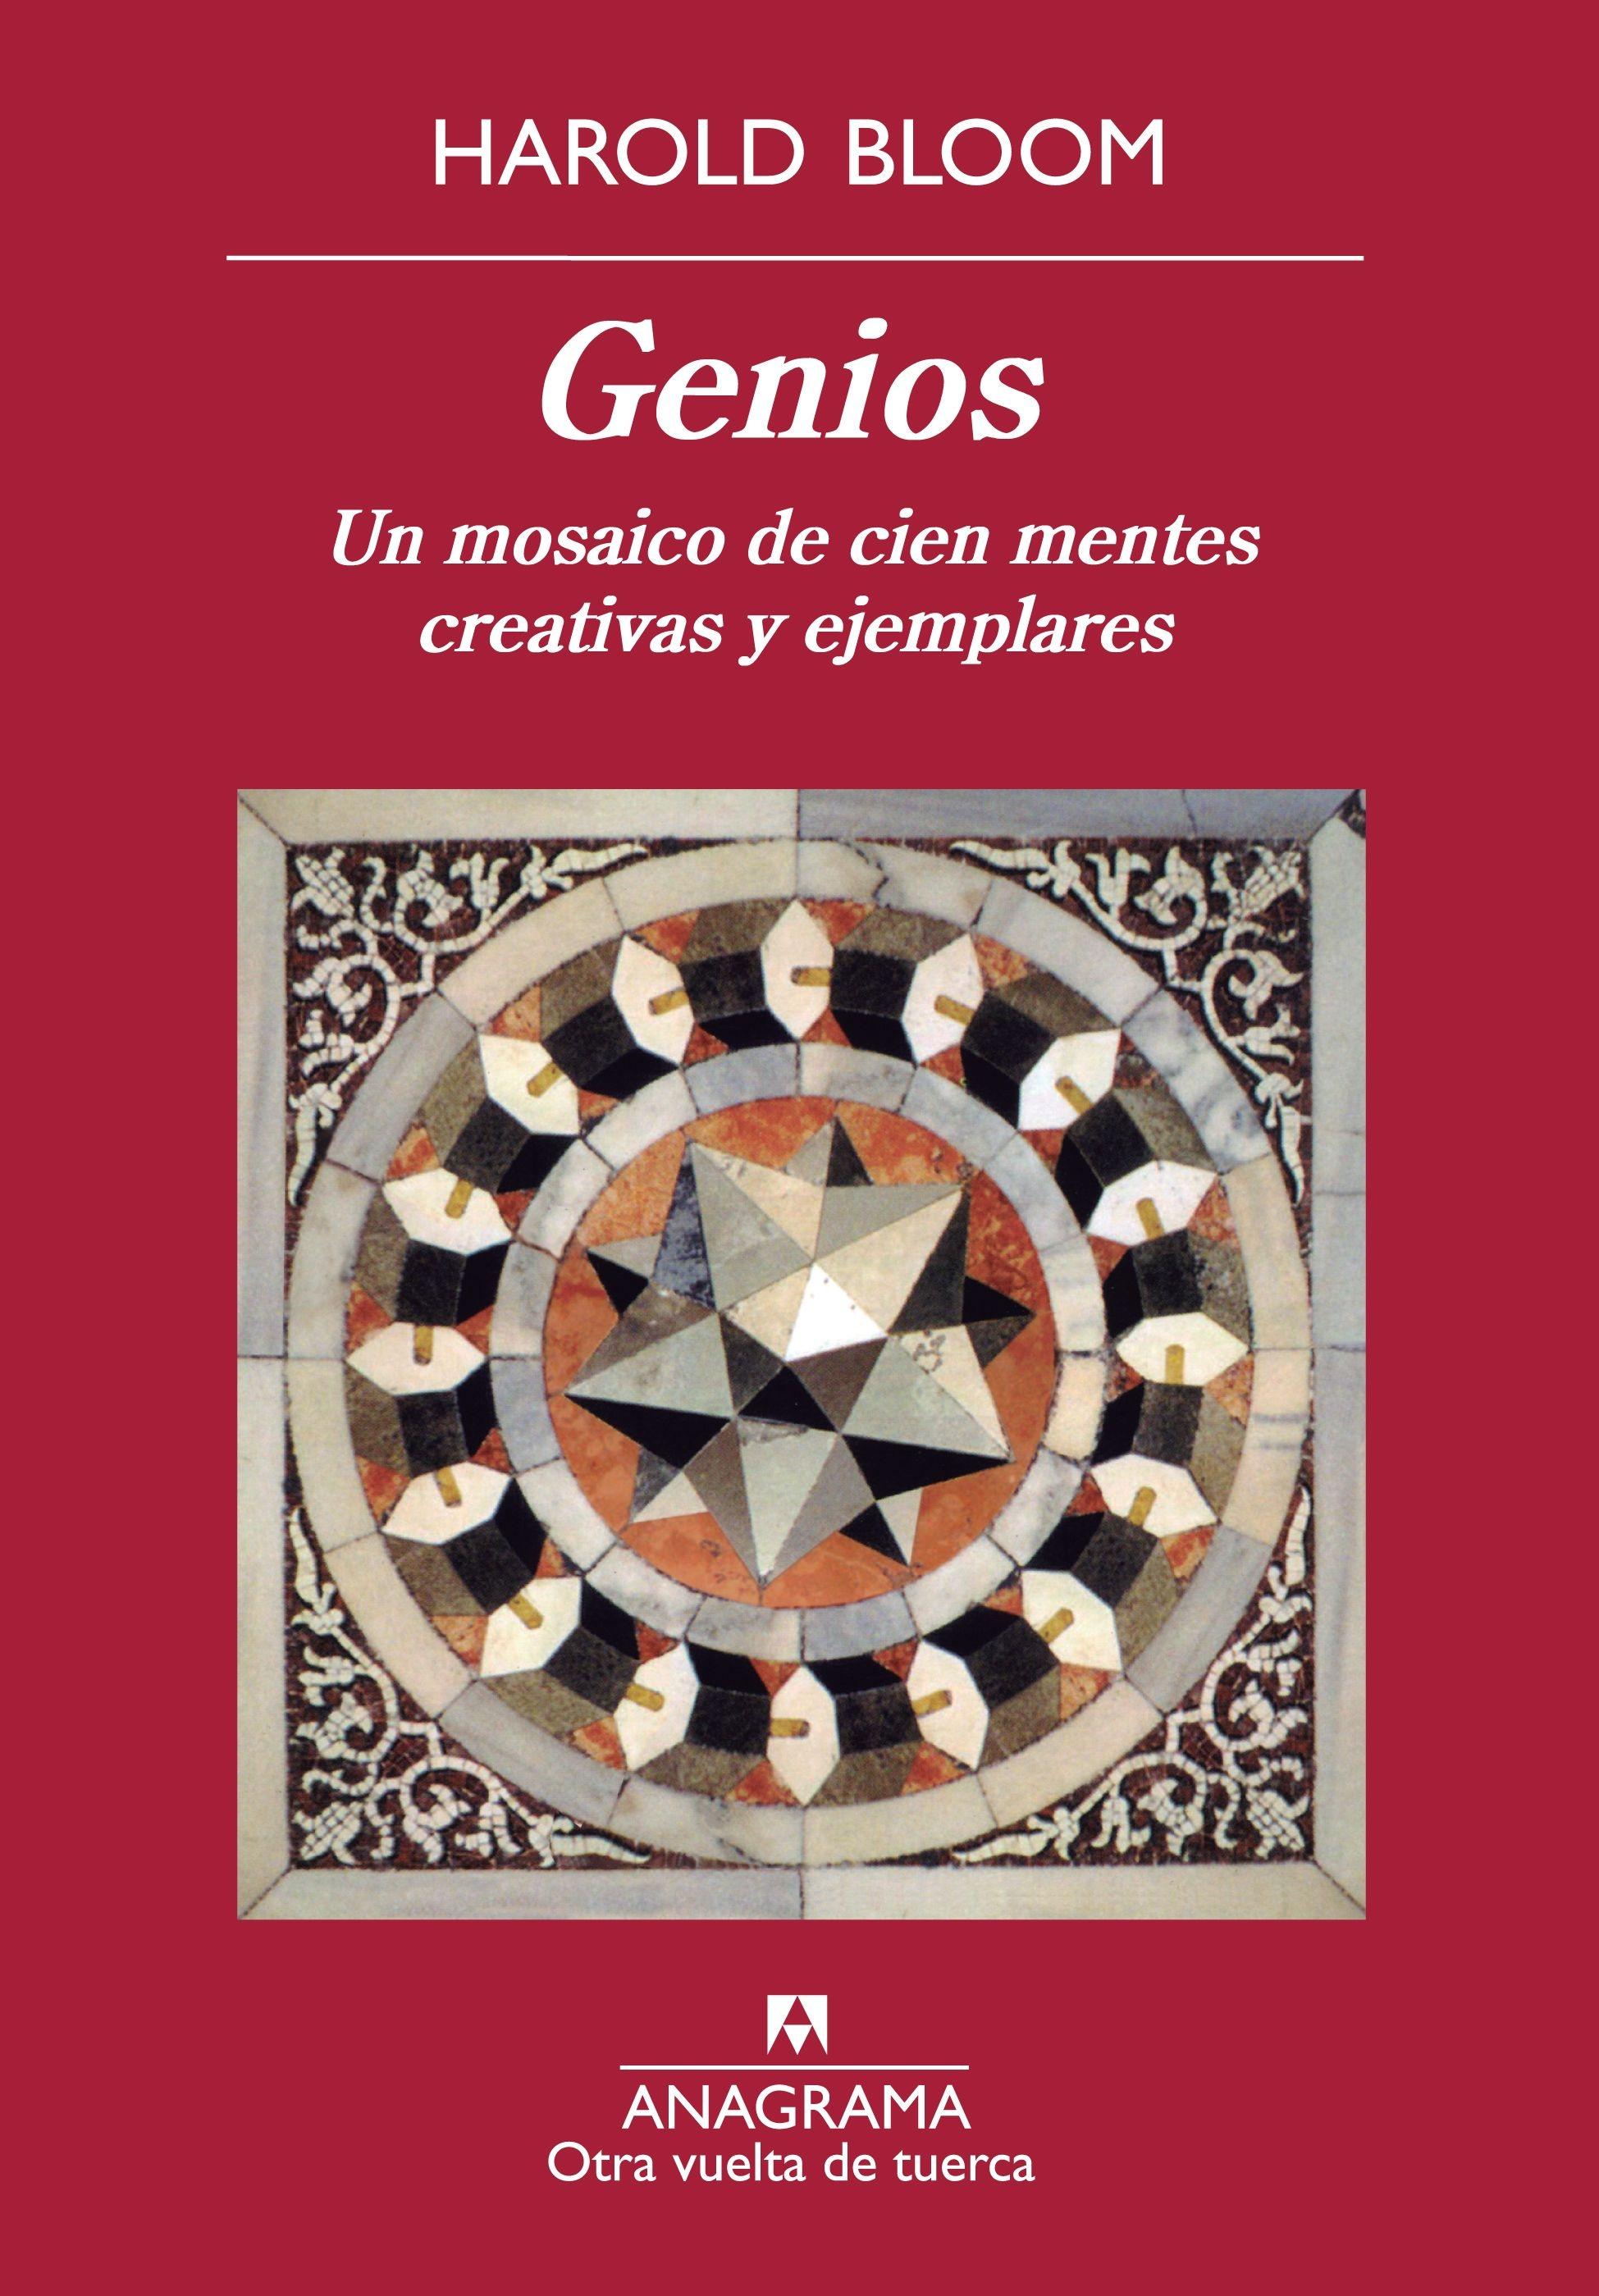 Genios. Un mosaico de cien mentes creativas y ejemplares "Un mosaico de cien mentes creativas y ejemplares"